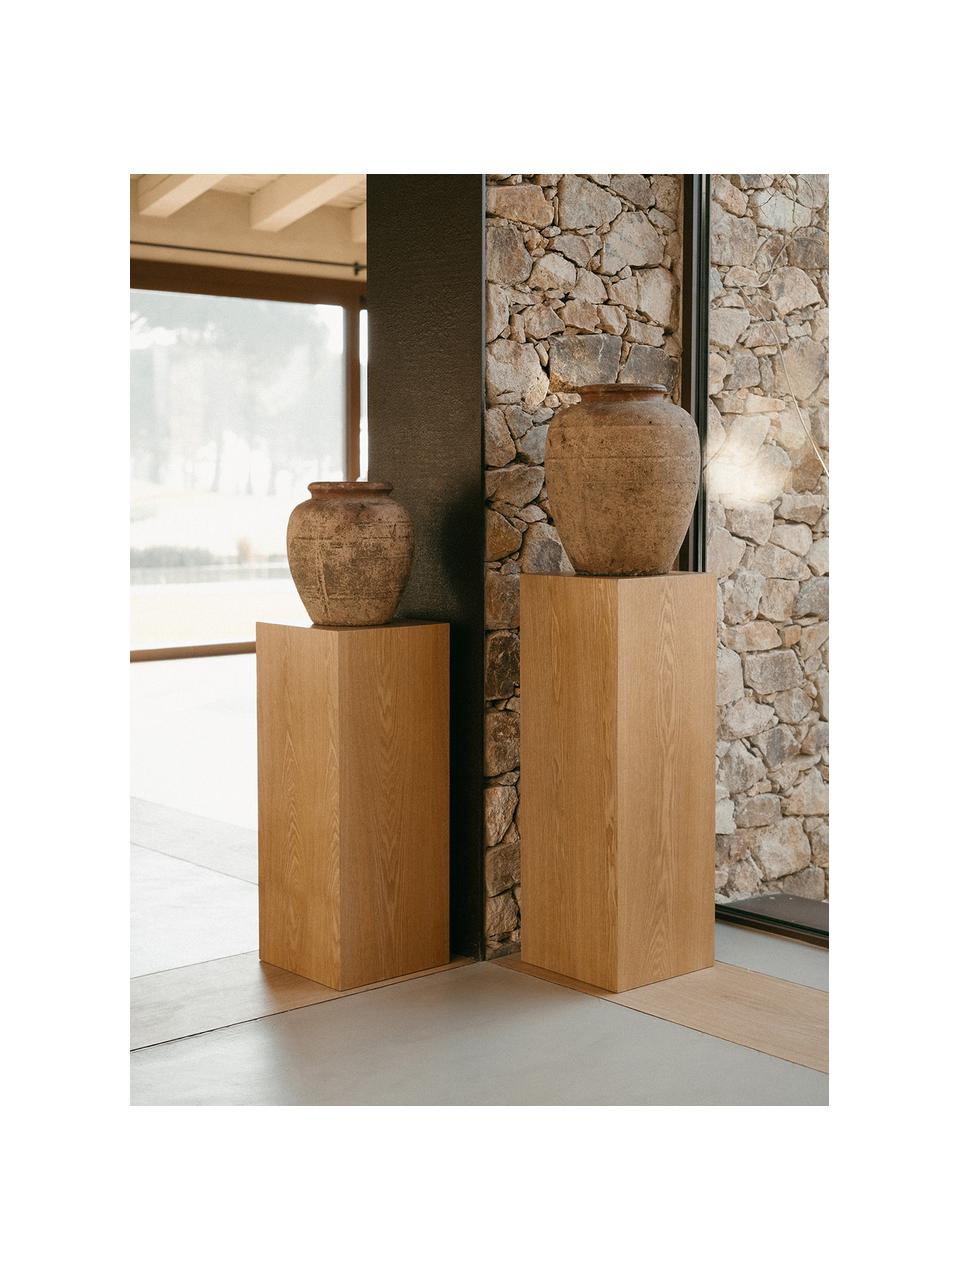 Colonna decorativa in legno Pedestal, in diverse dimensioni, Pannello di fibra a media densità (MDF), con finitura in frassino, Legno, Larg. 28 x Alt. 70 cm